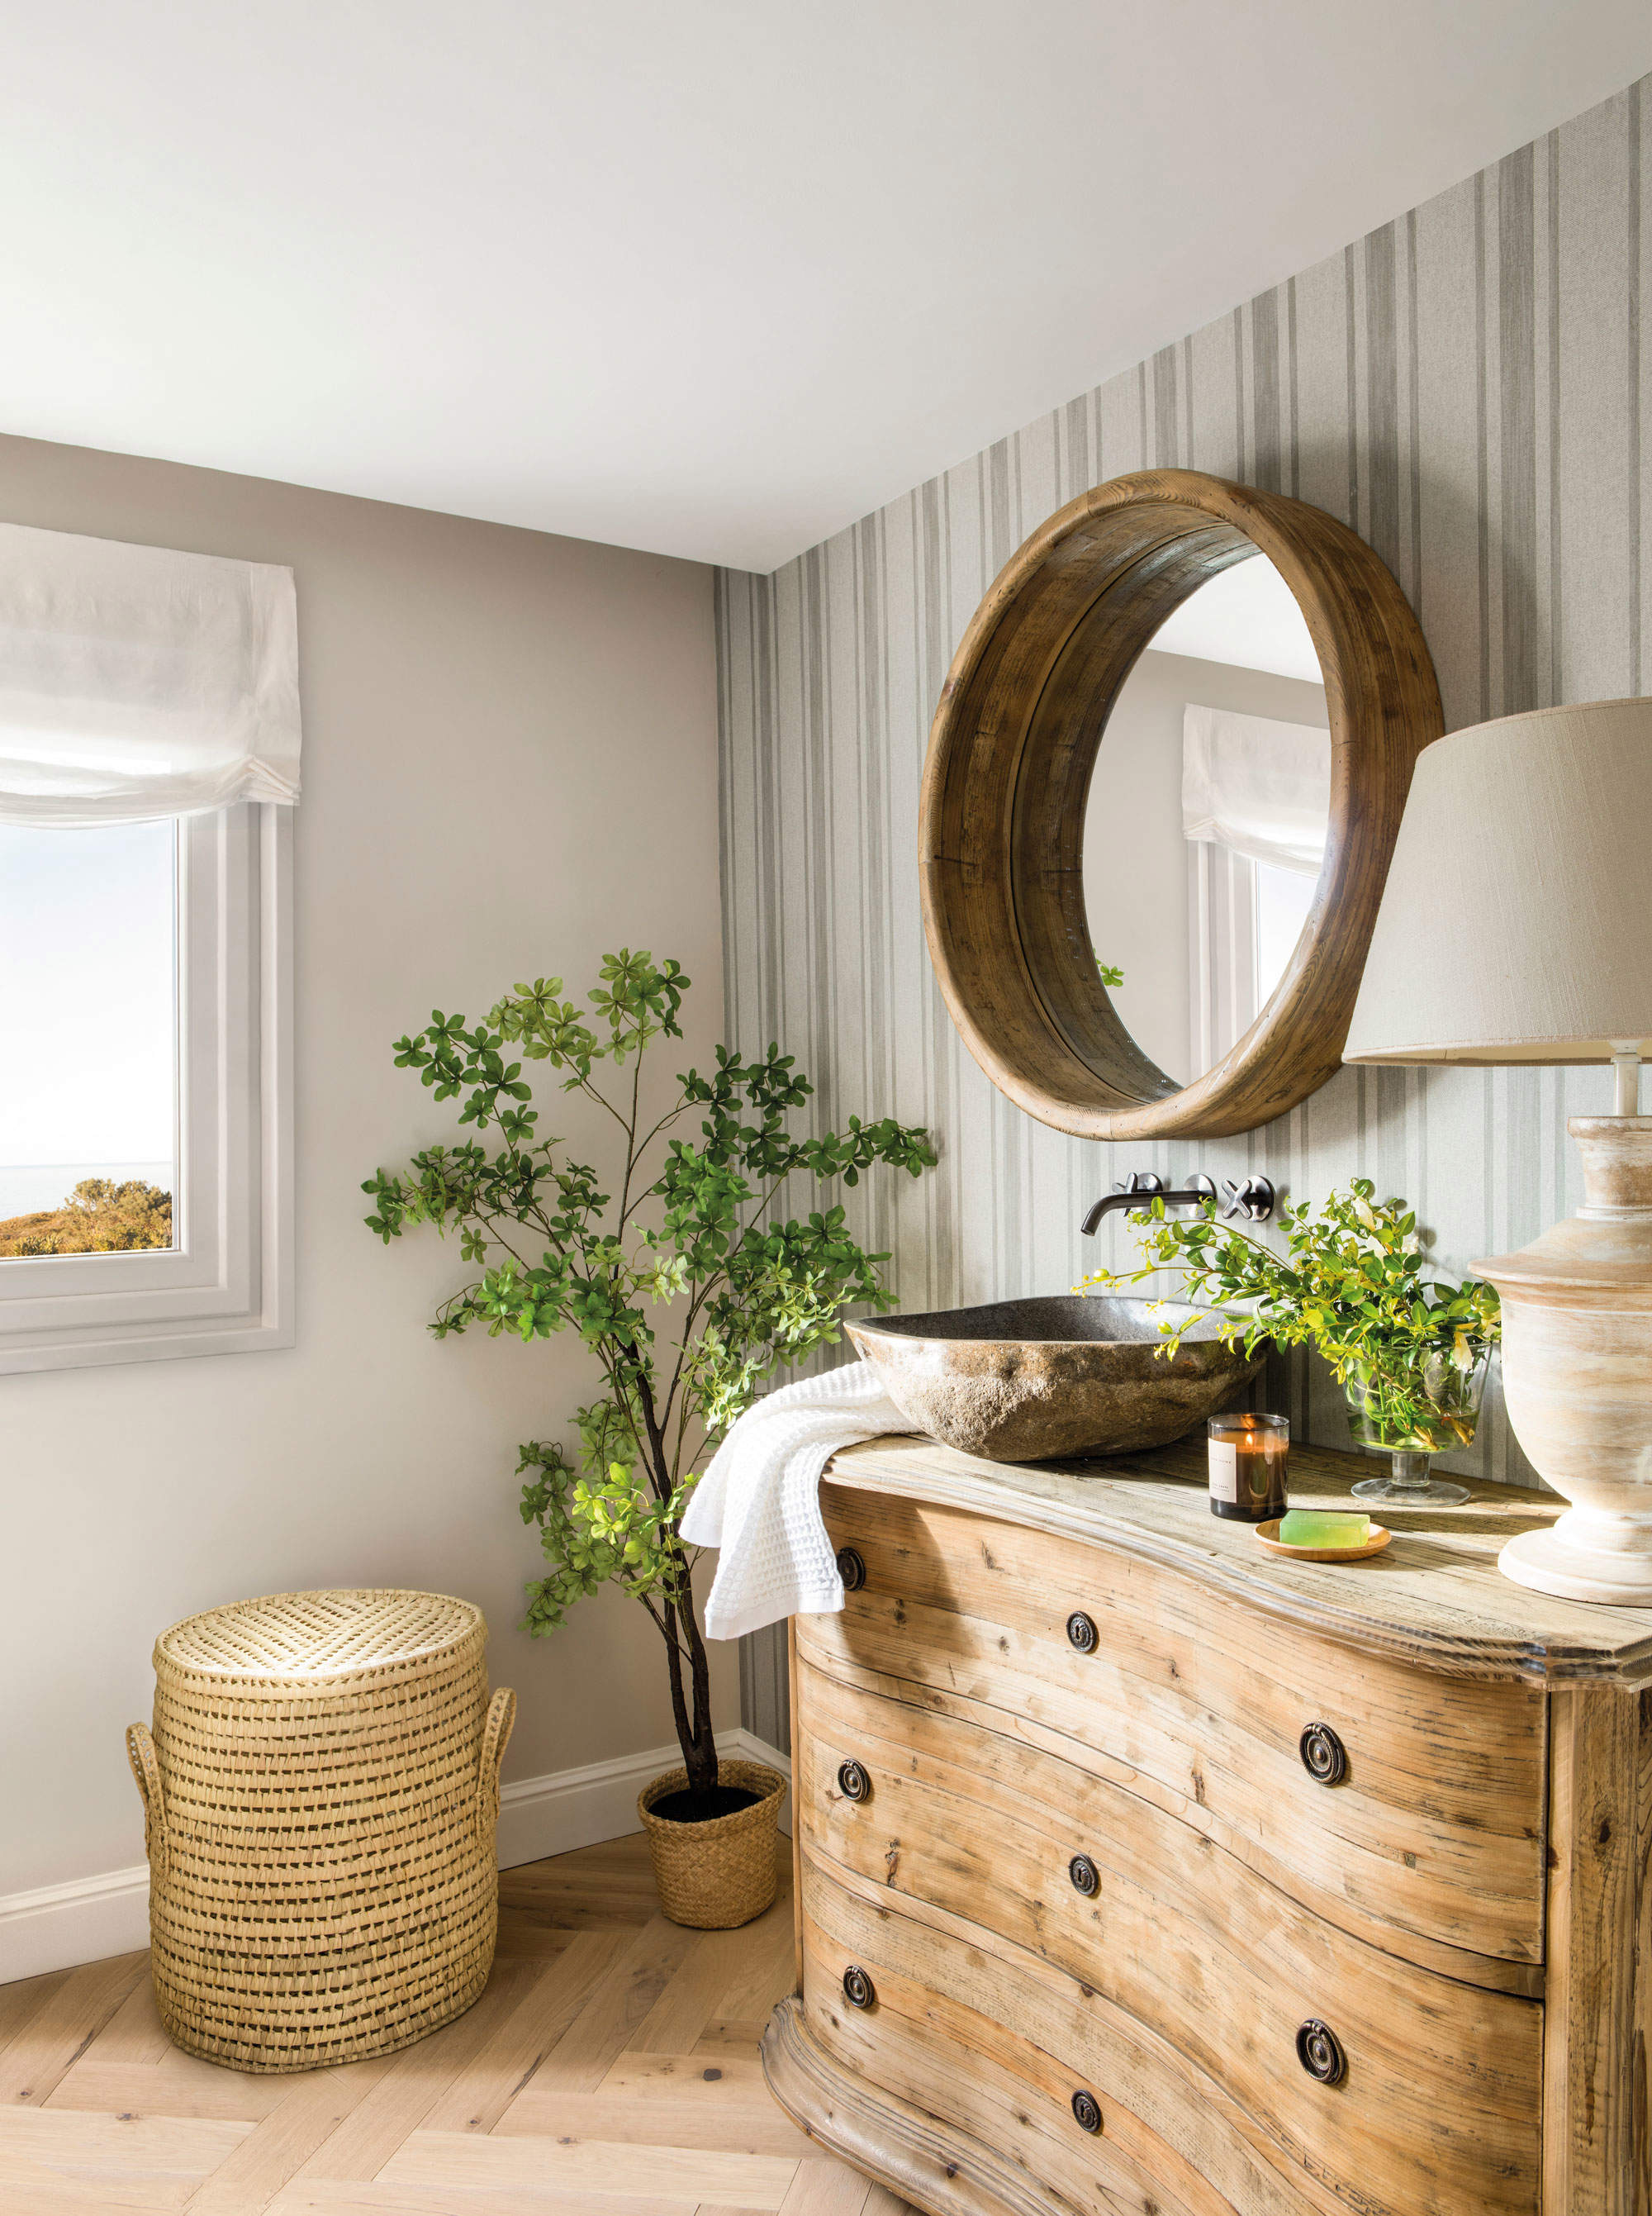 Baño de estilo rústico con una cómoda de madera y un espejo redondo.